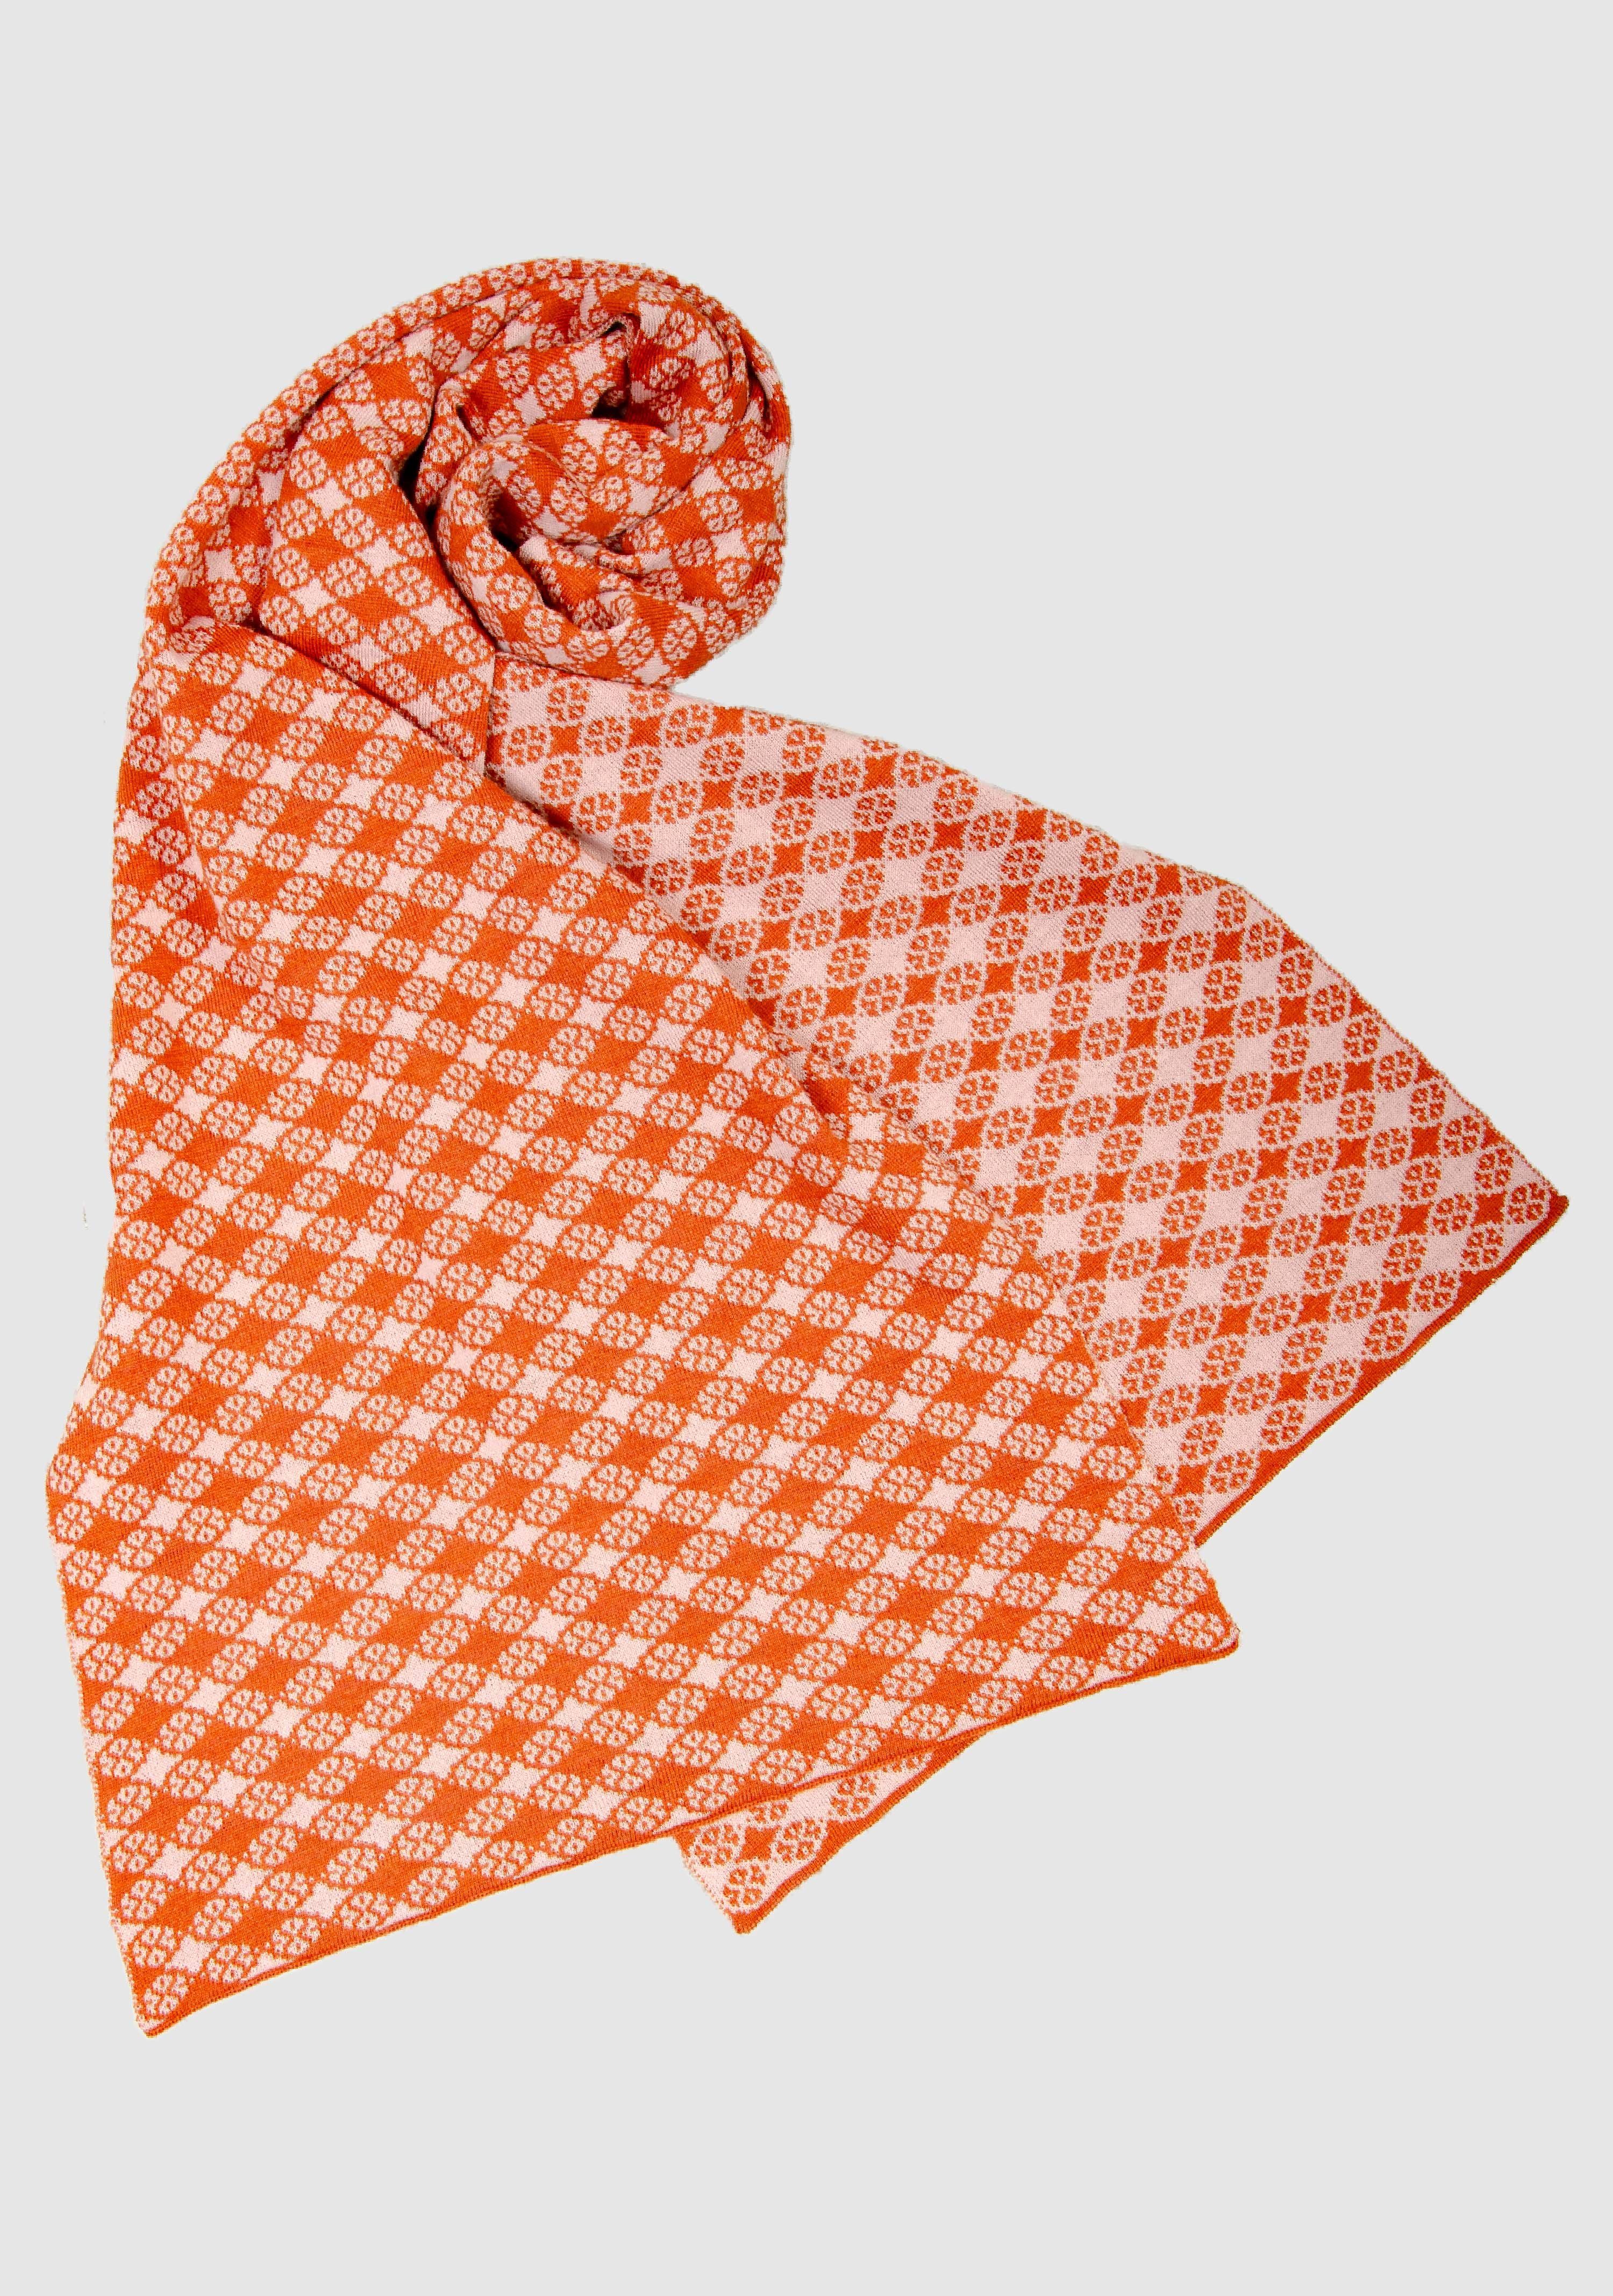 LANARTO Merino slow in 100% Schal orange_rosa Farben Blütenkaro fashion schönen extrasoft Wollschal